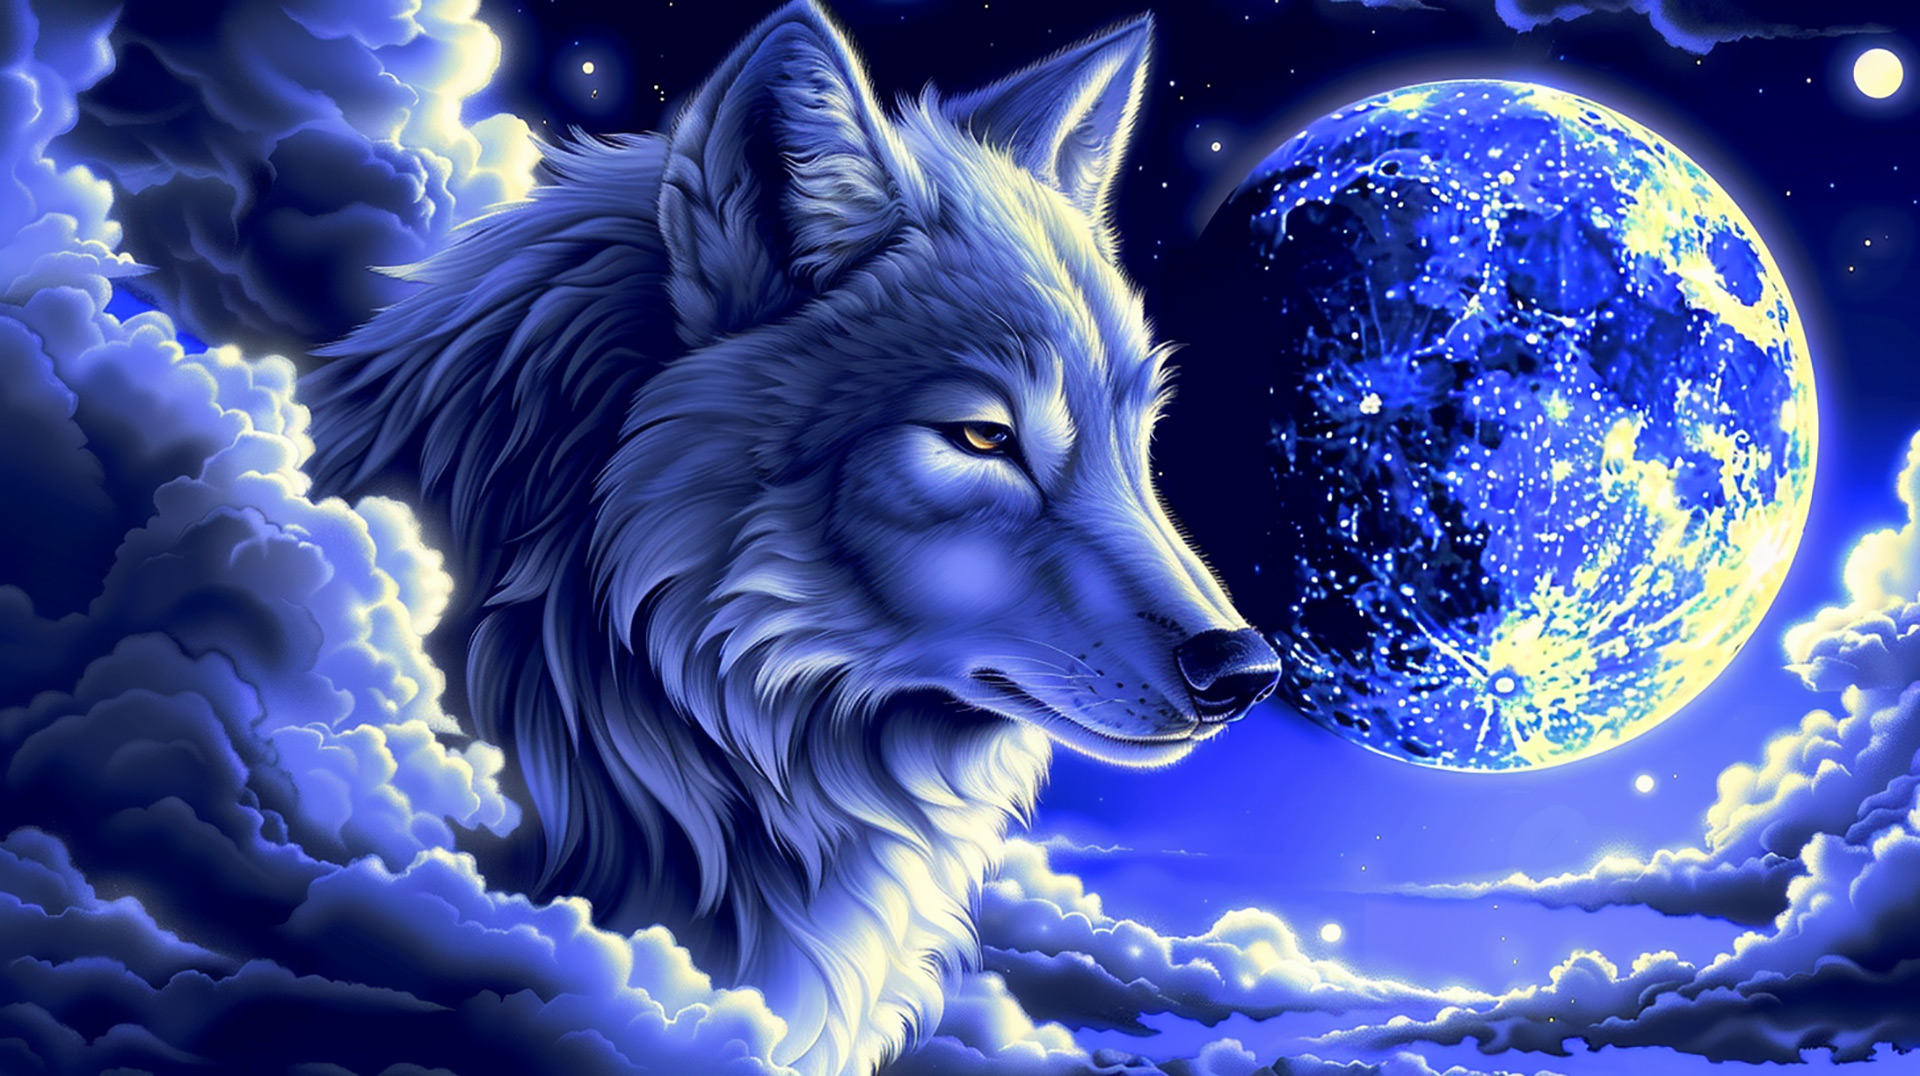 Kawaii Wolf with Moon HD Digital Image